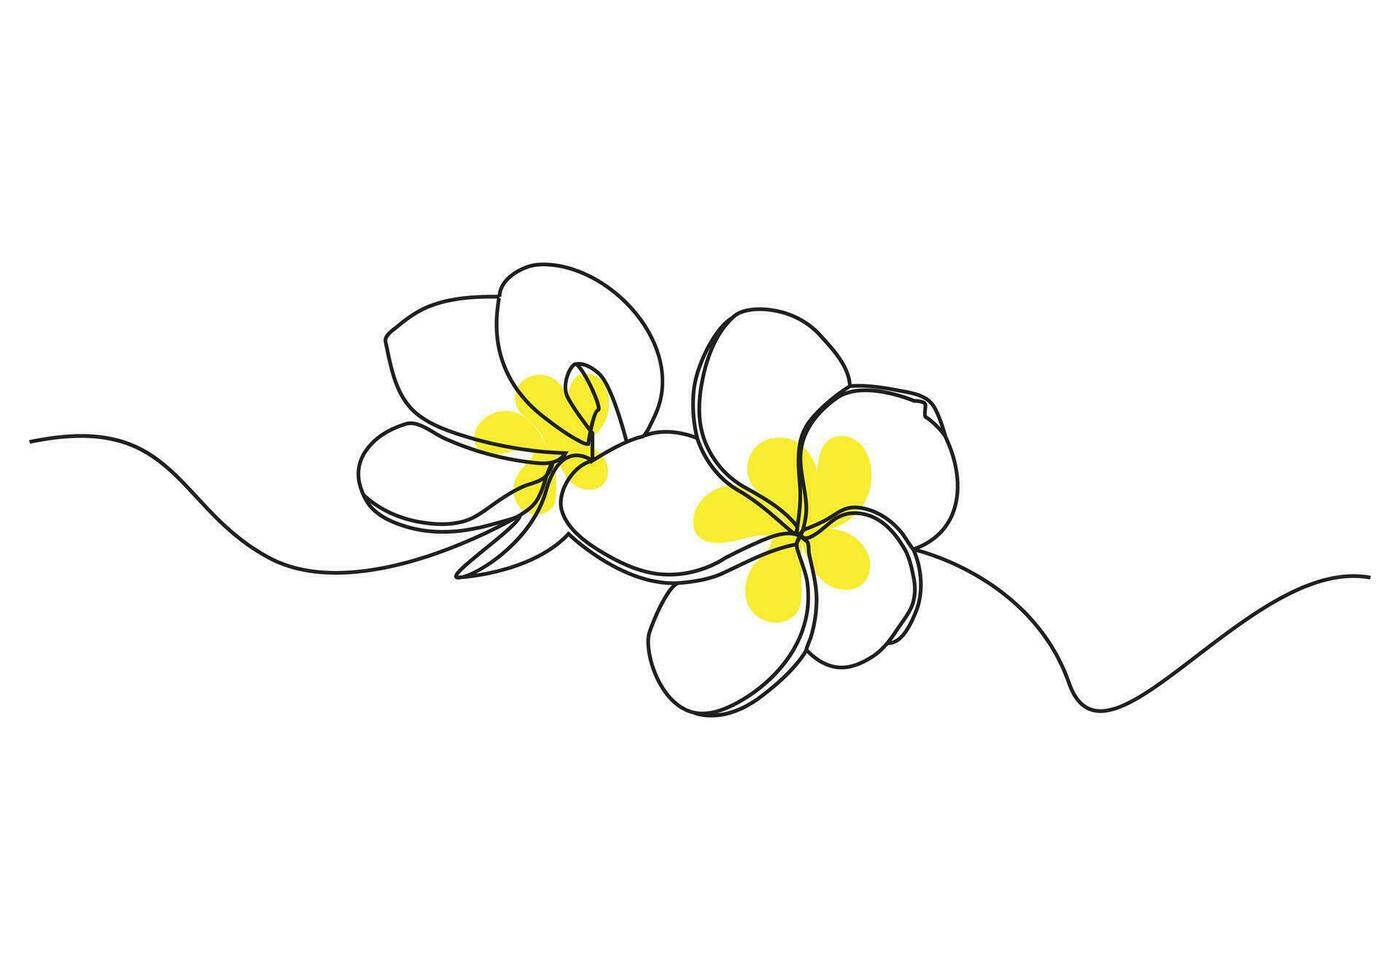 plumeria blommor i kontinuerlig ett linje konst teckning. frangipani blomma. vektor illustration isolerat på vit.